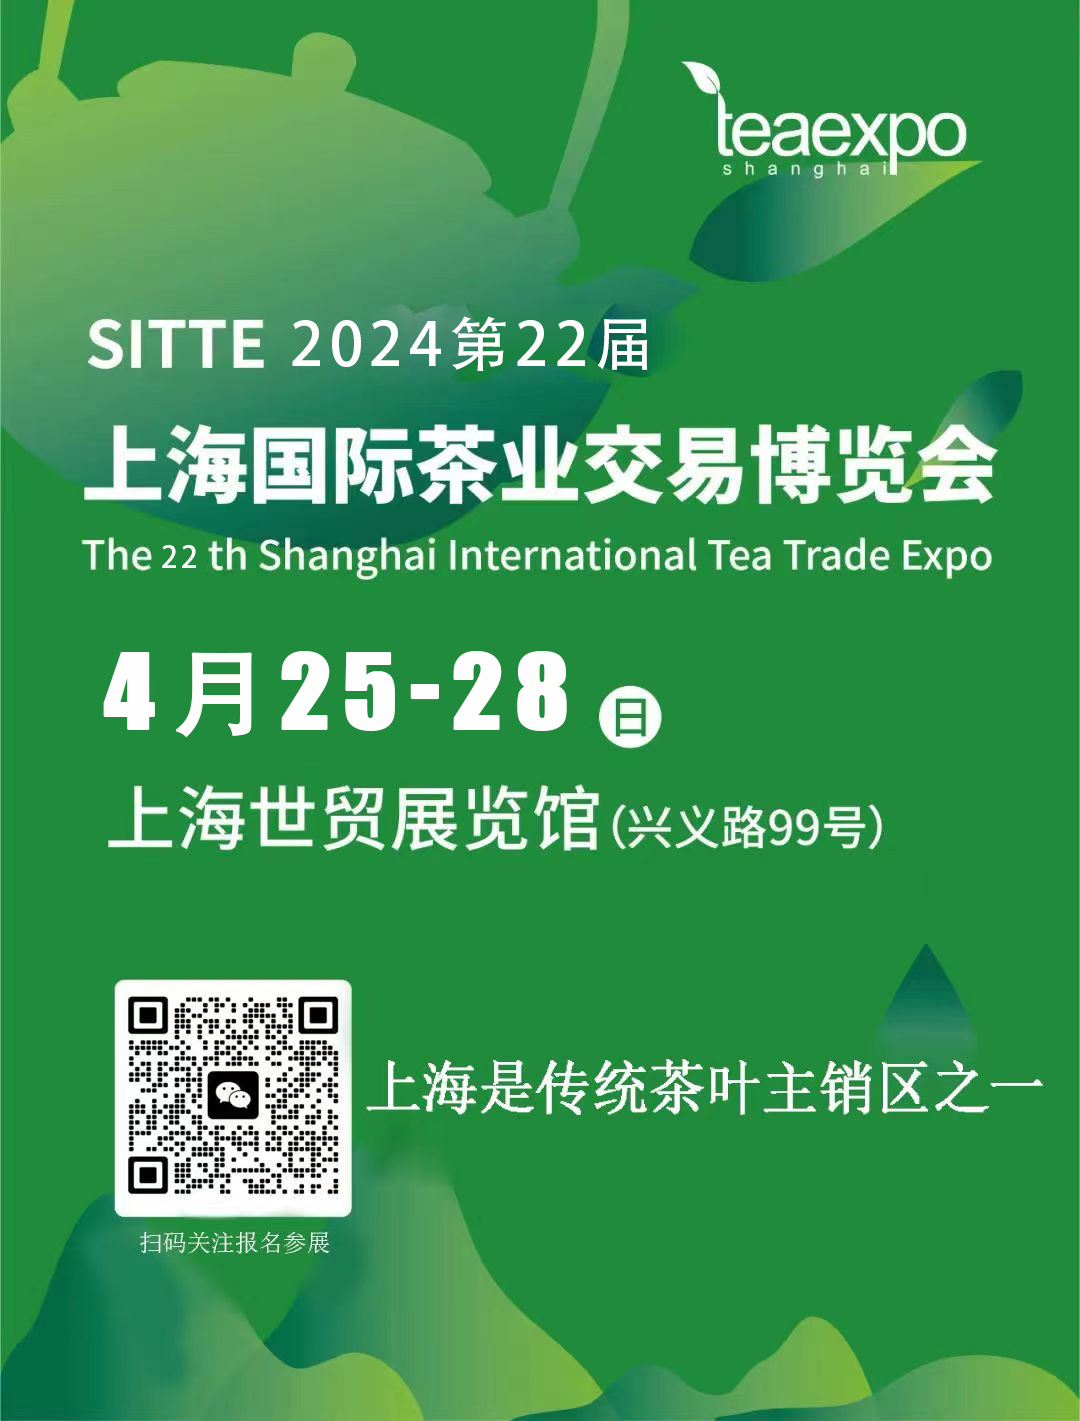 11月16-19上海茶博会.jpg